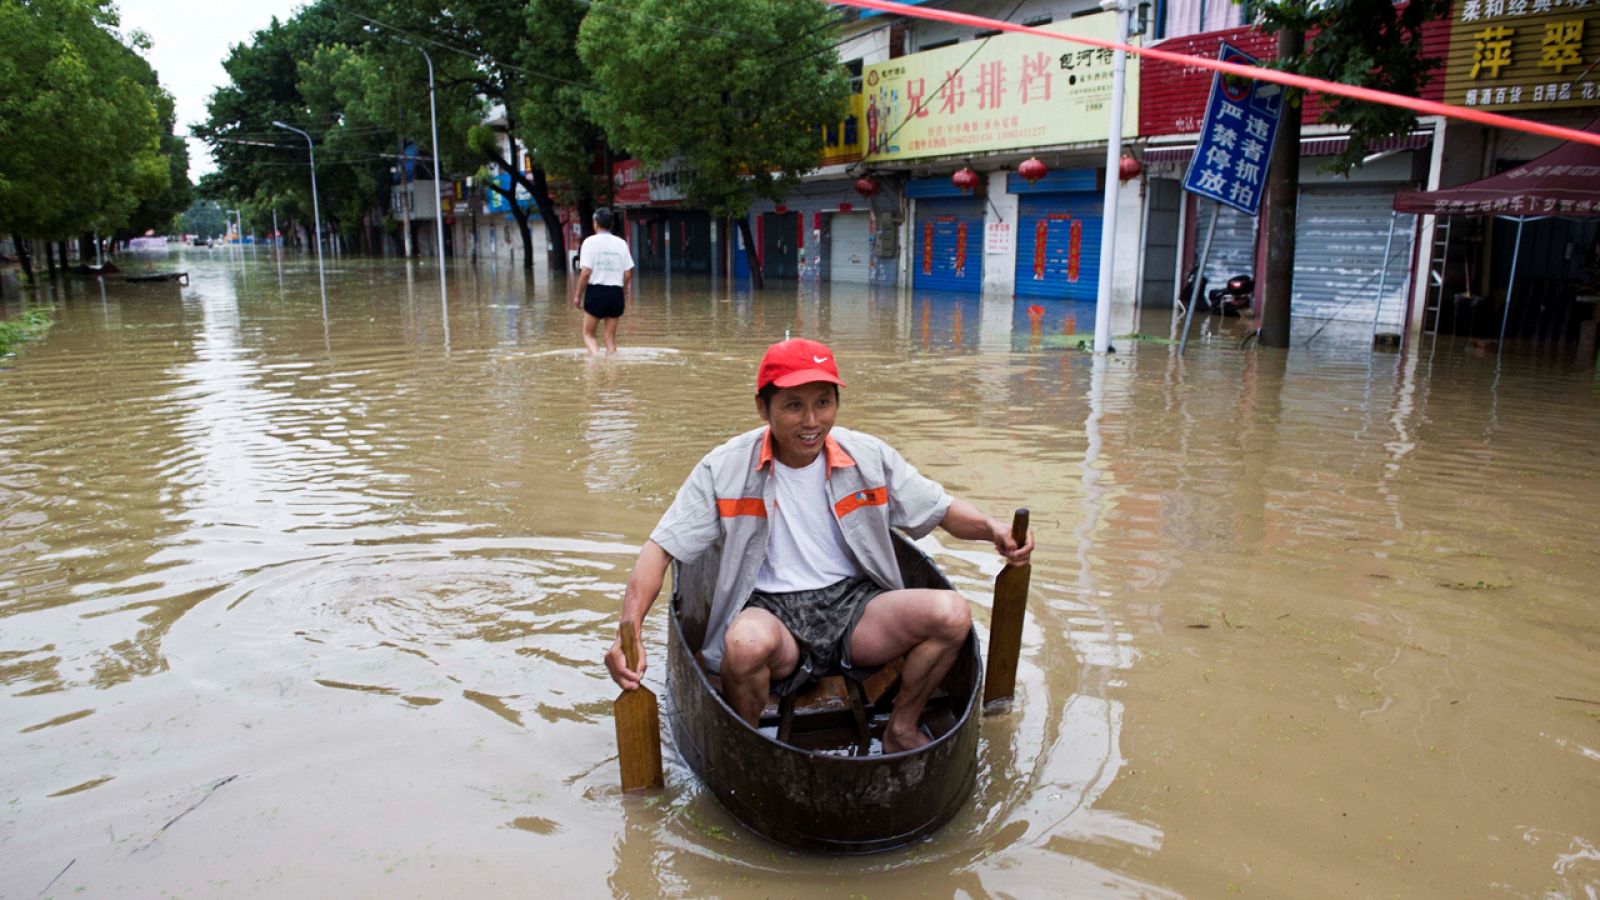 Un ciudadano rema en una barca improvisada por las calles inundadas de Chaohu, China